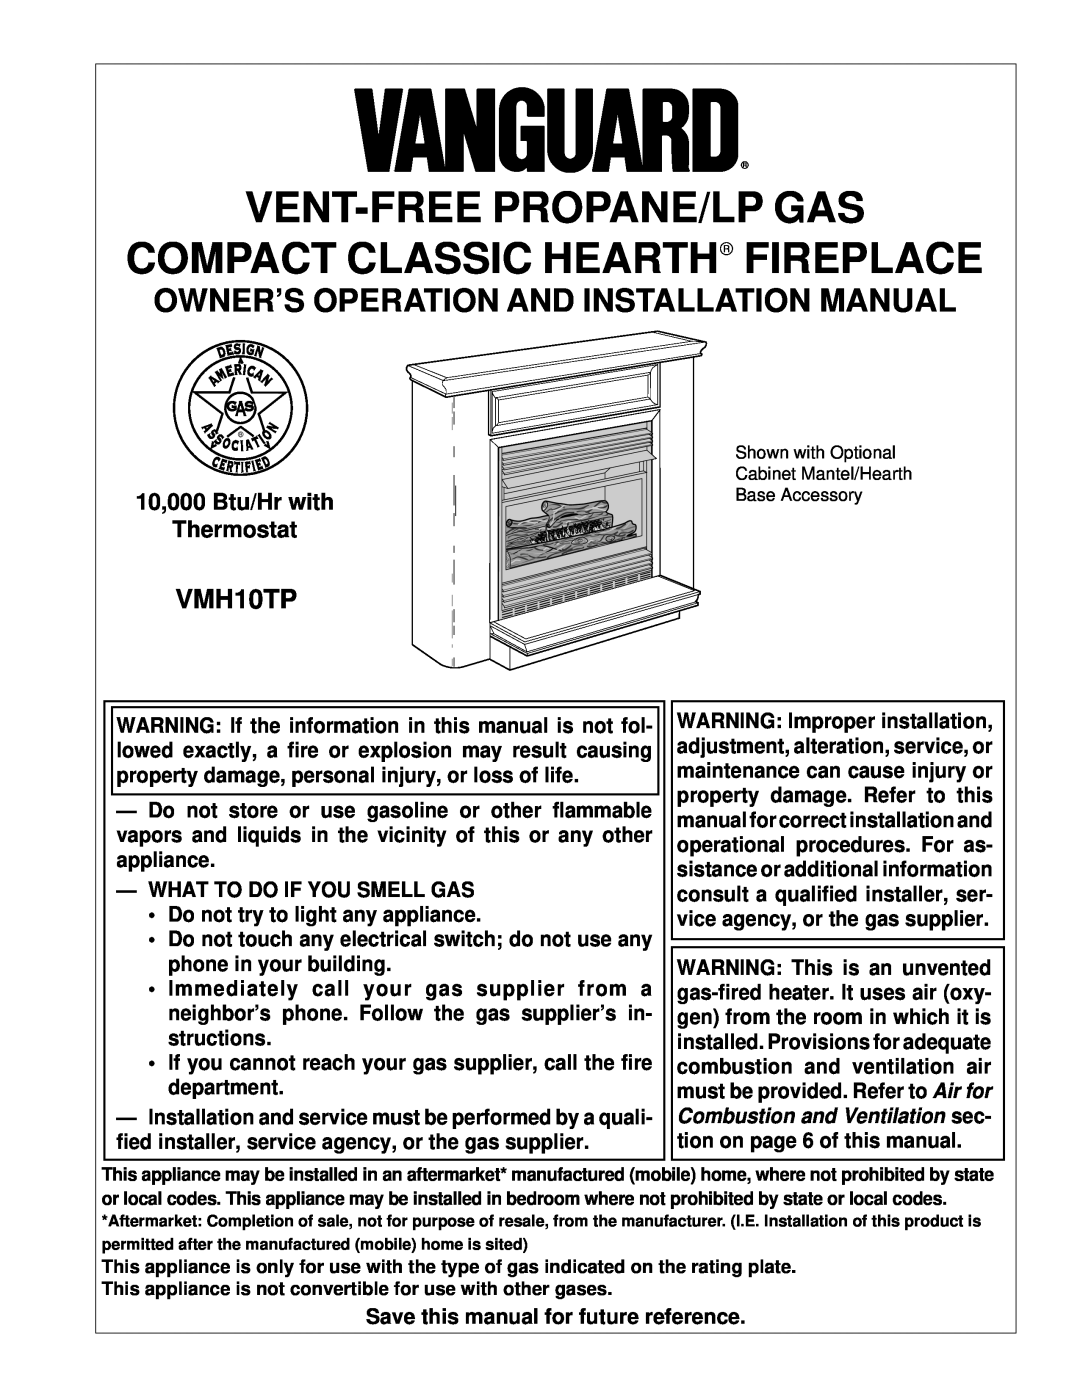 Desa VMH10TP installation manual Owner’S Operation And Installation Manual, Vent-Freepropane/Lp Gas 